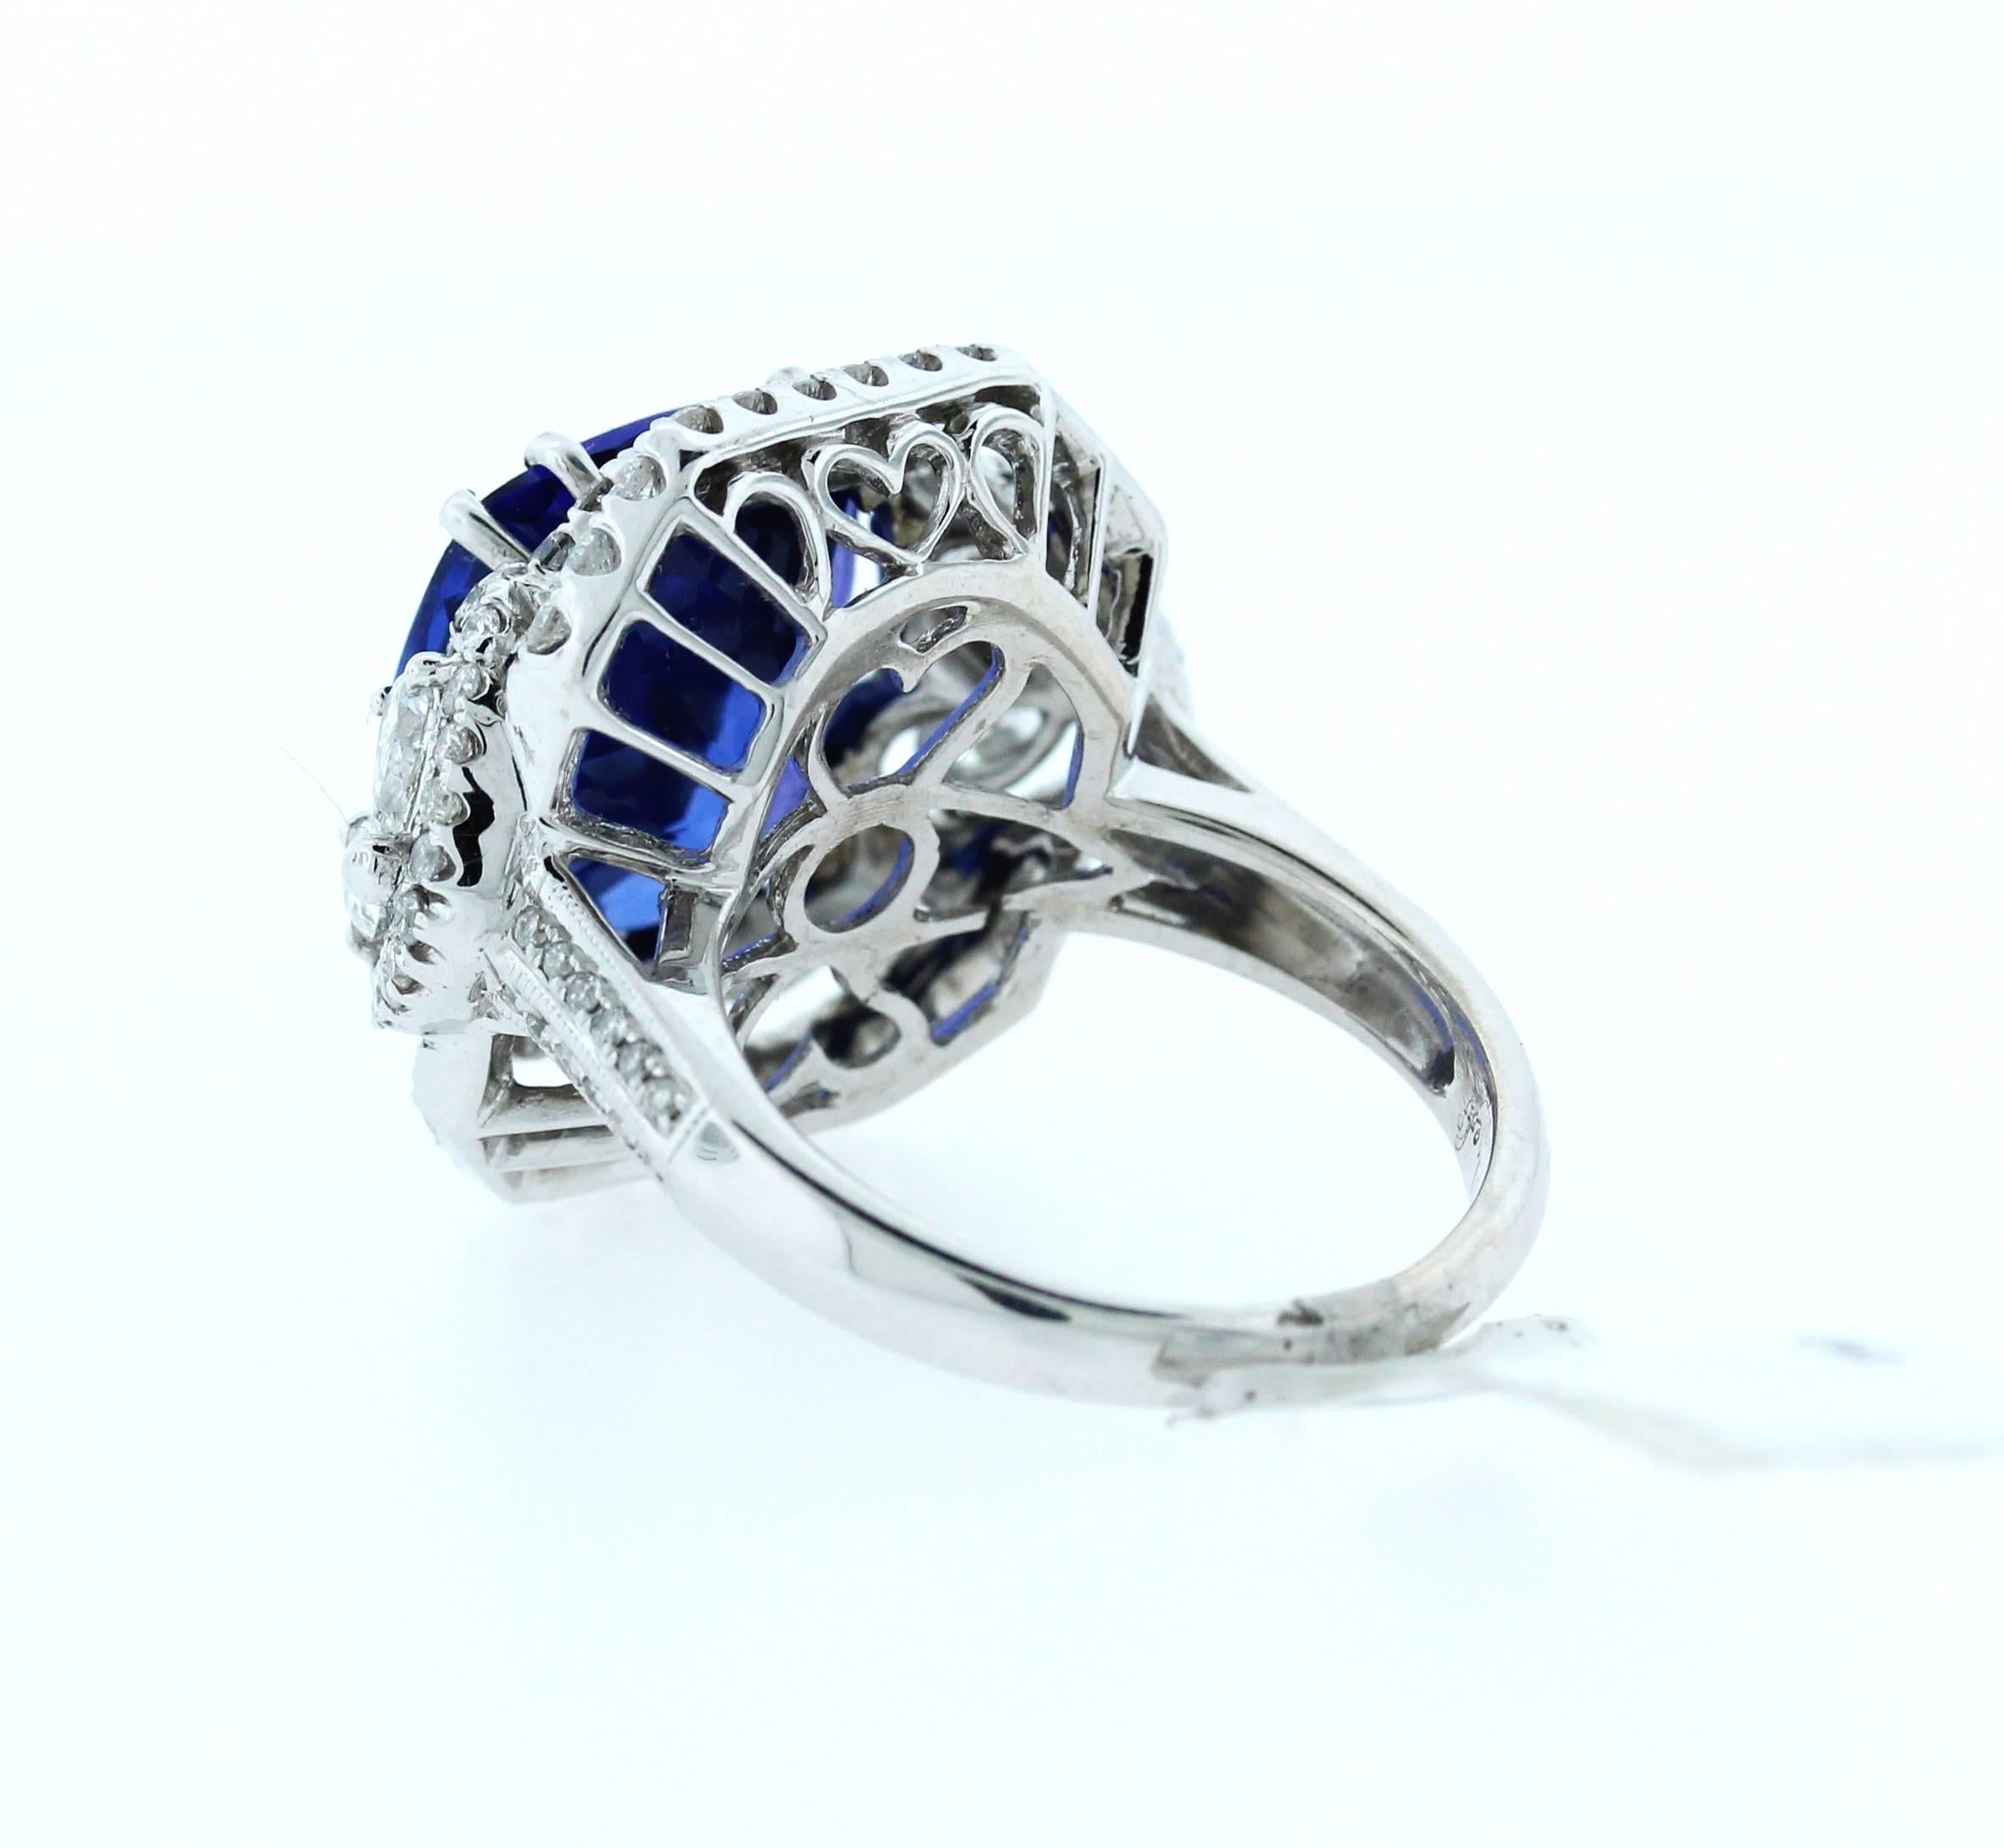 Women's or Men's 10.32 Carat Tanzanite Ring with Diamonds